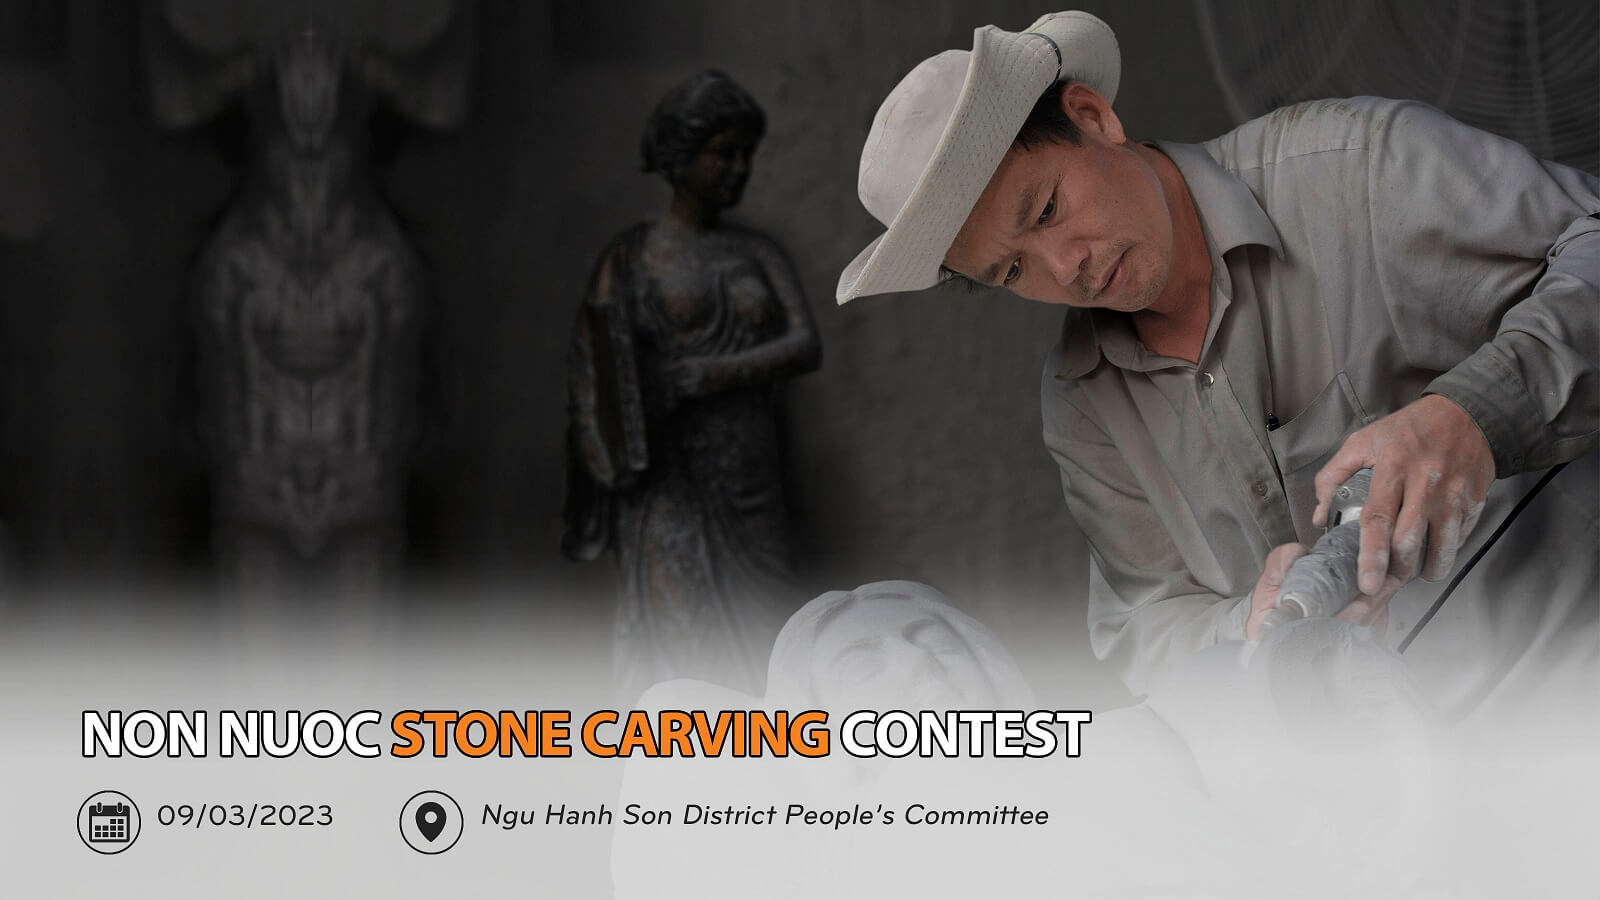 1 Non Nuoc Stone Carving Contest